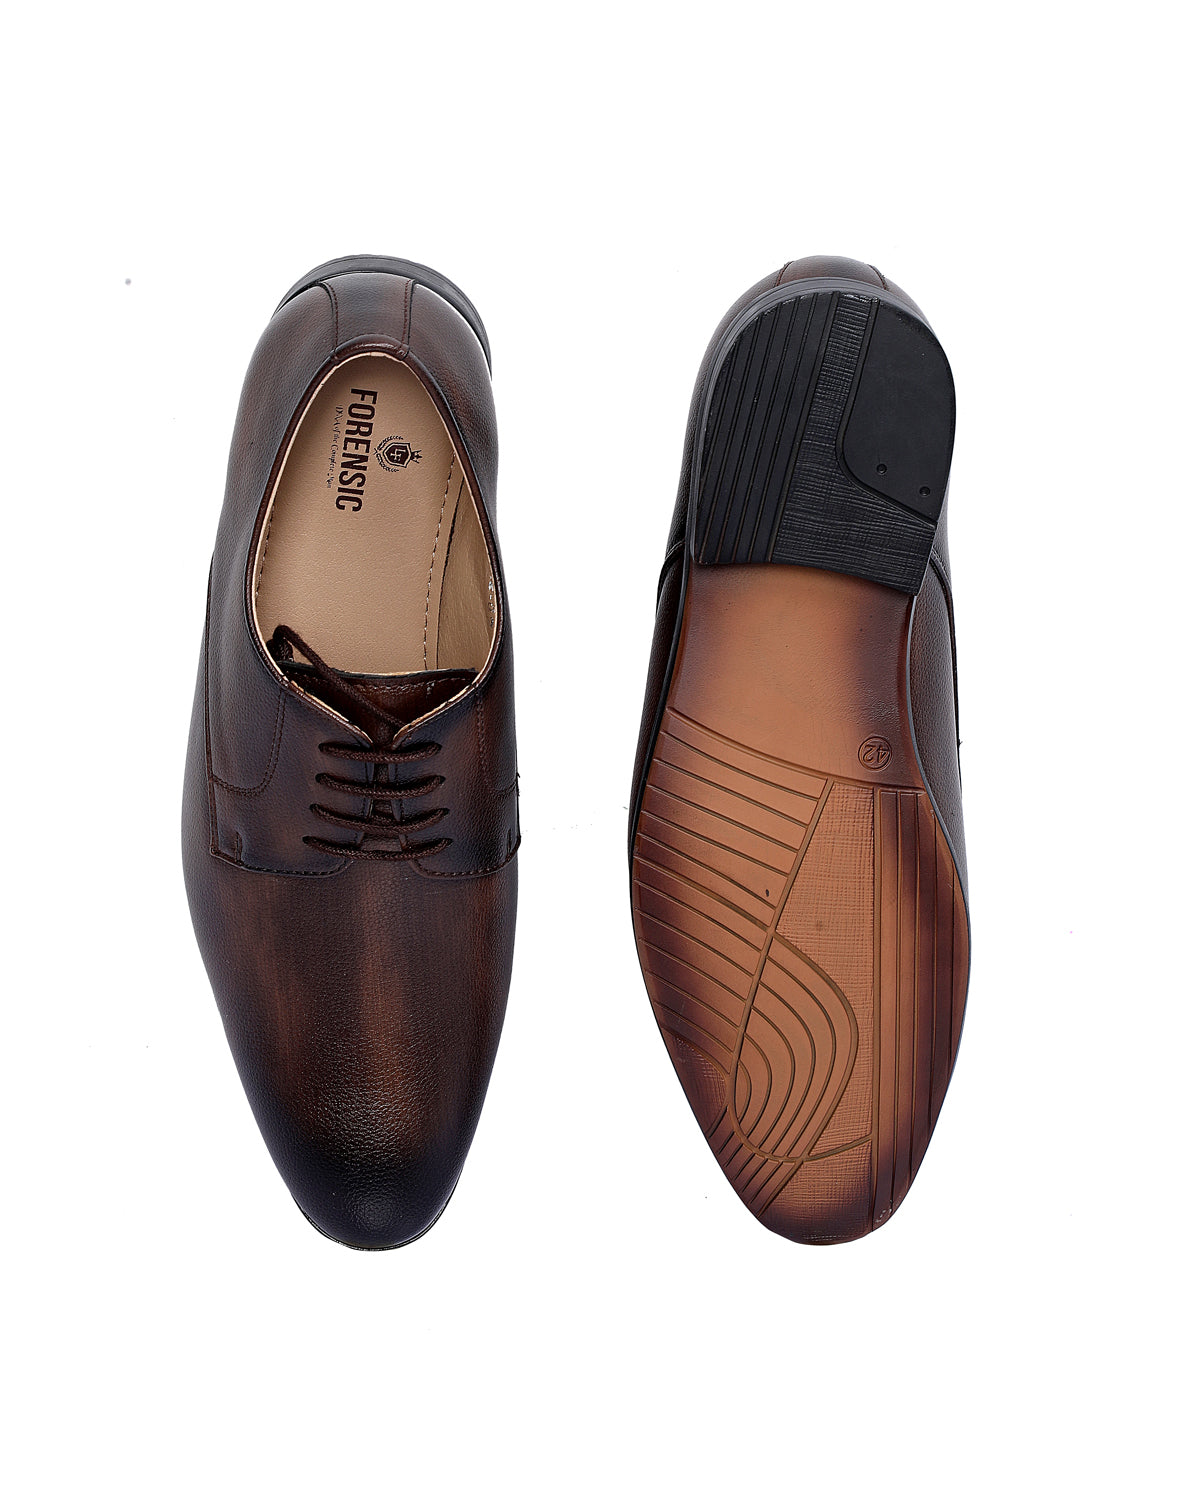 Teakwood Men's Brown Solid Leather Formal Derbys